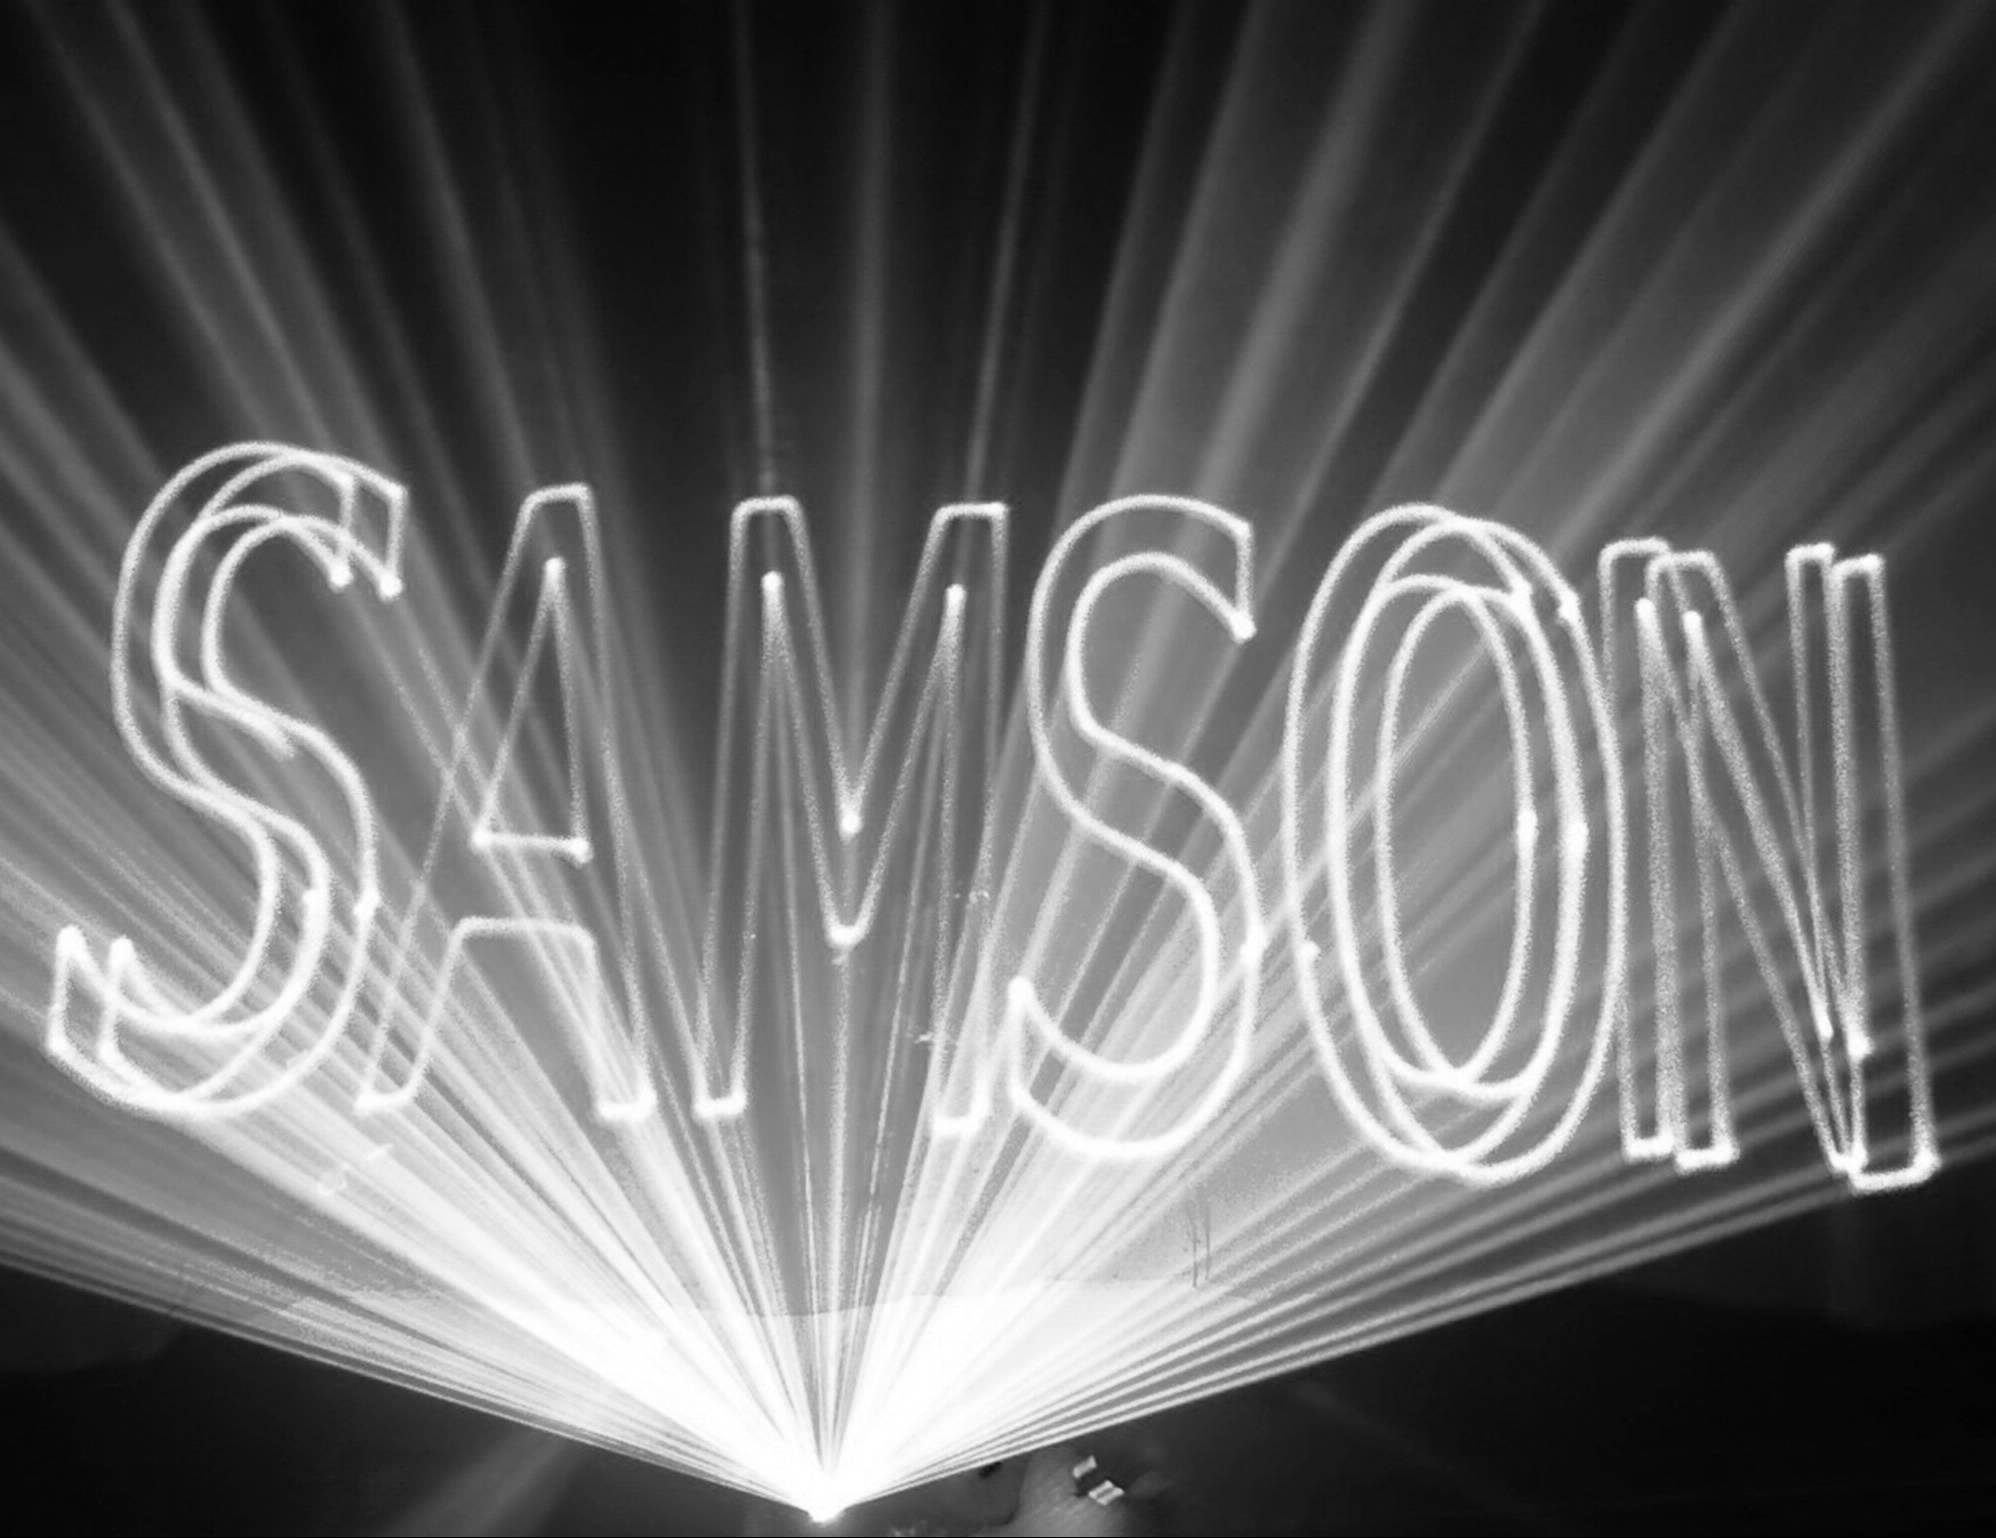 DJ Samson